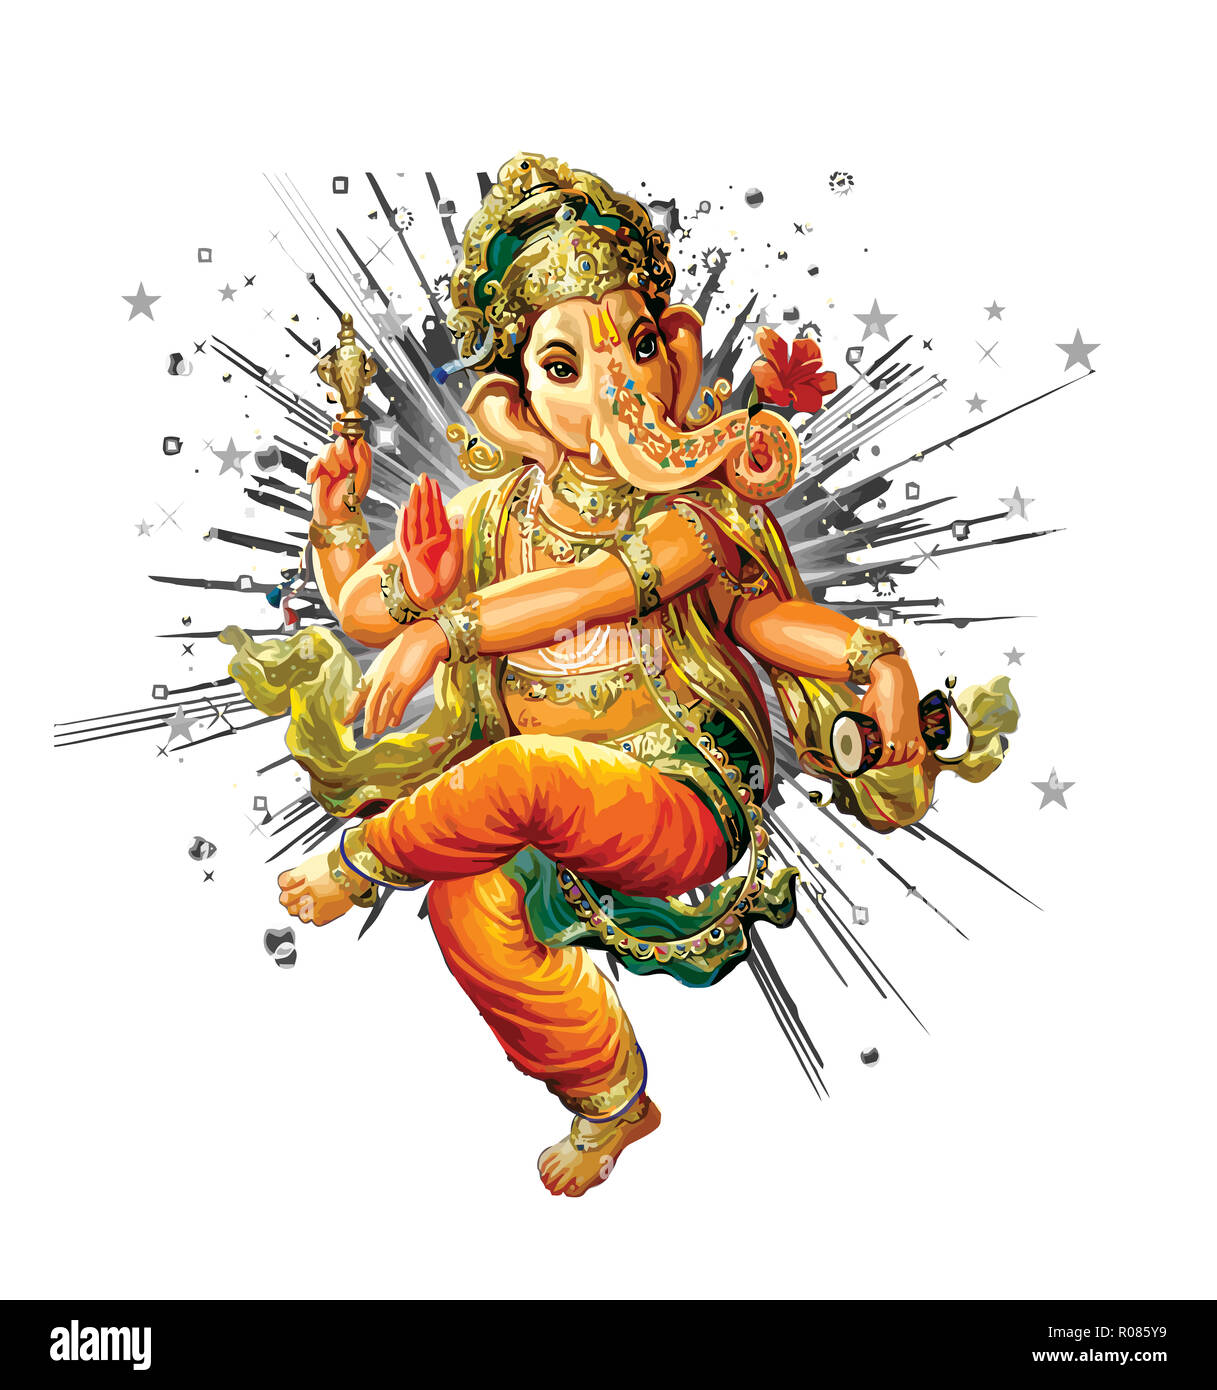 Ganesha Hindu Elefant Herrn Glauben Mythologie Segne Gott Abbildung Asien Stockfotografie Alamy